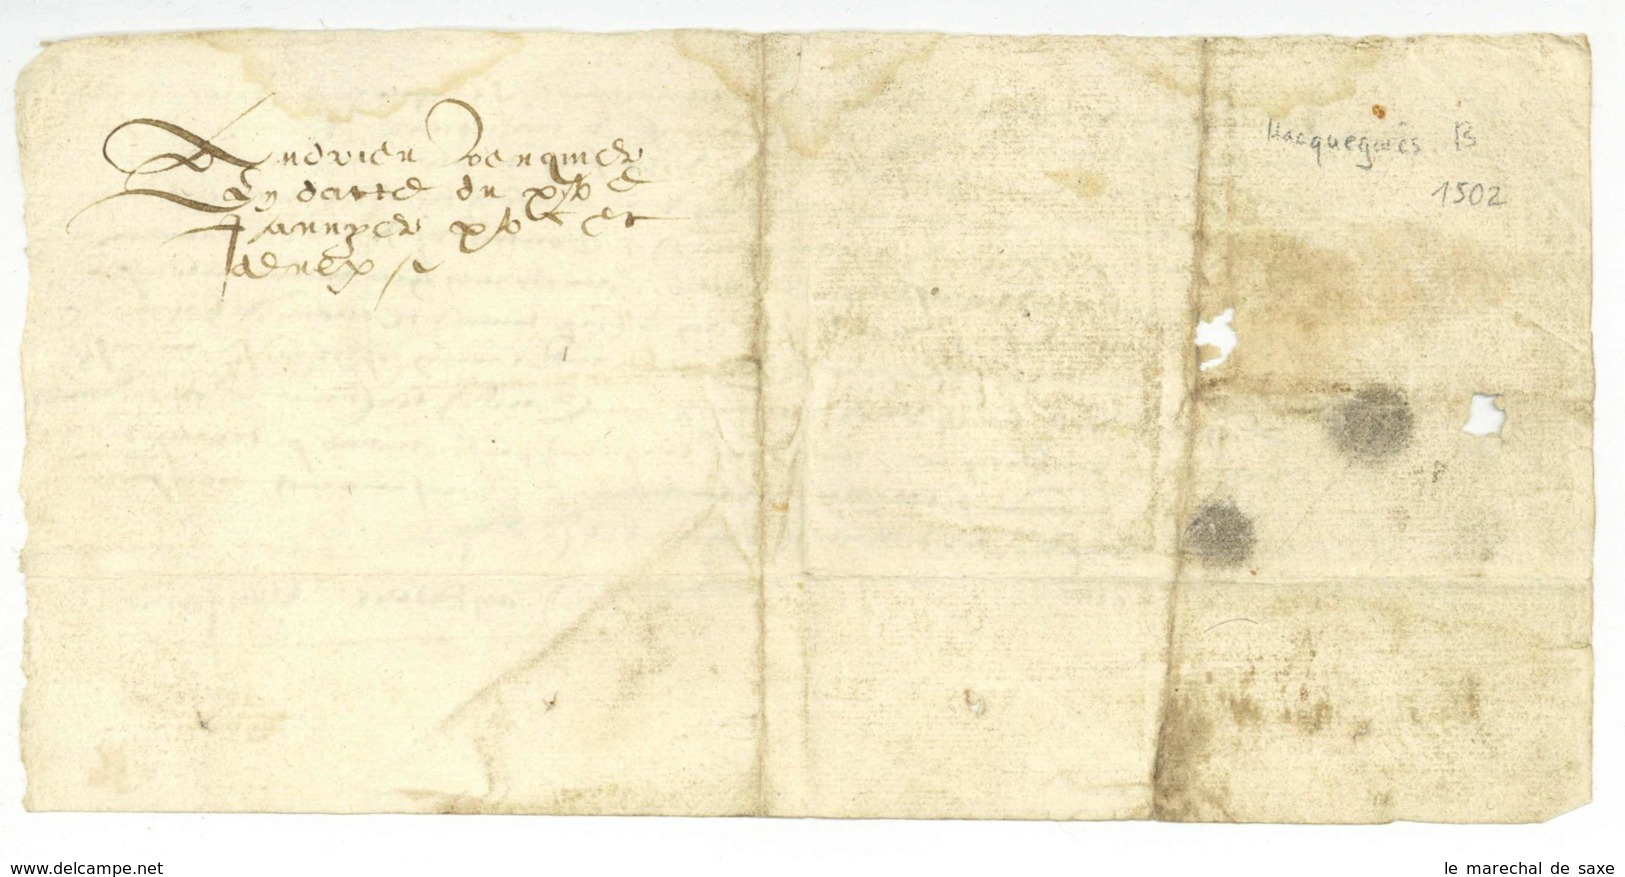 Hacquegnies ATH Belgique 1502 Foy Et Hommage Andrieu Venquiere A M De TRAZEGNIES - Manuscripts